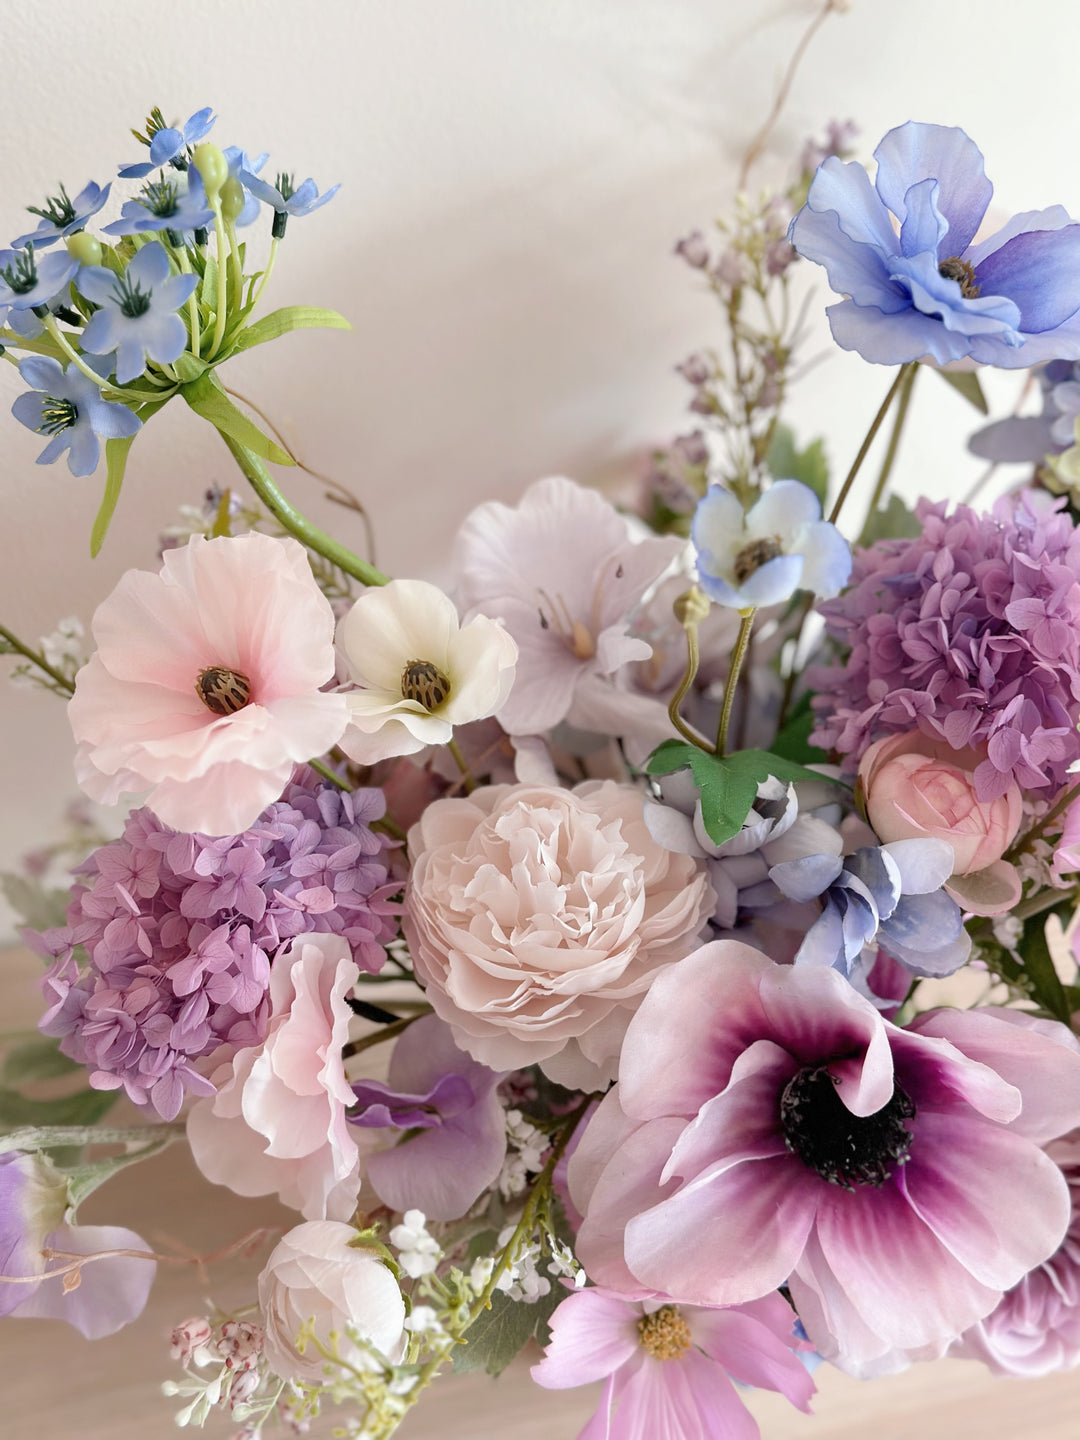 Violet Whisper Floral Elegance in The Pot (2-sided)